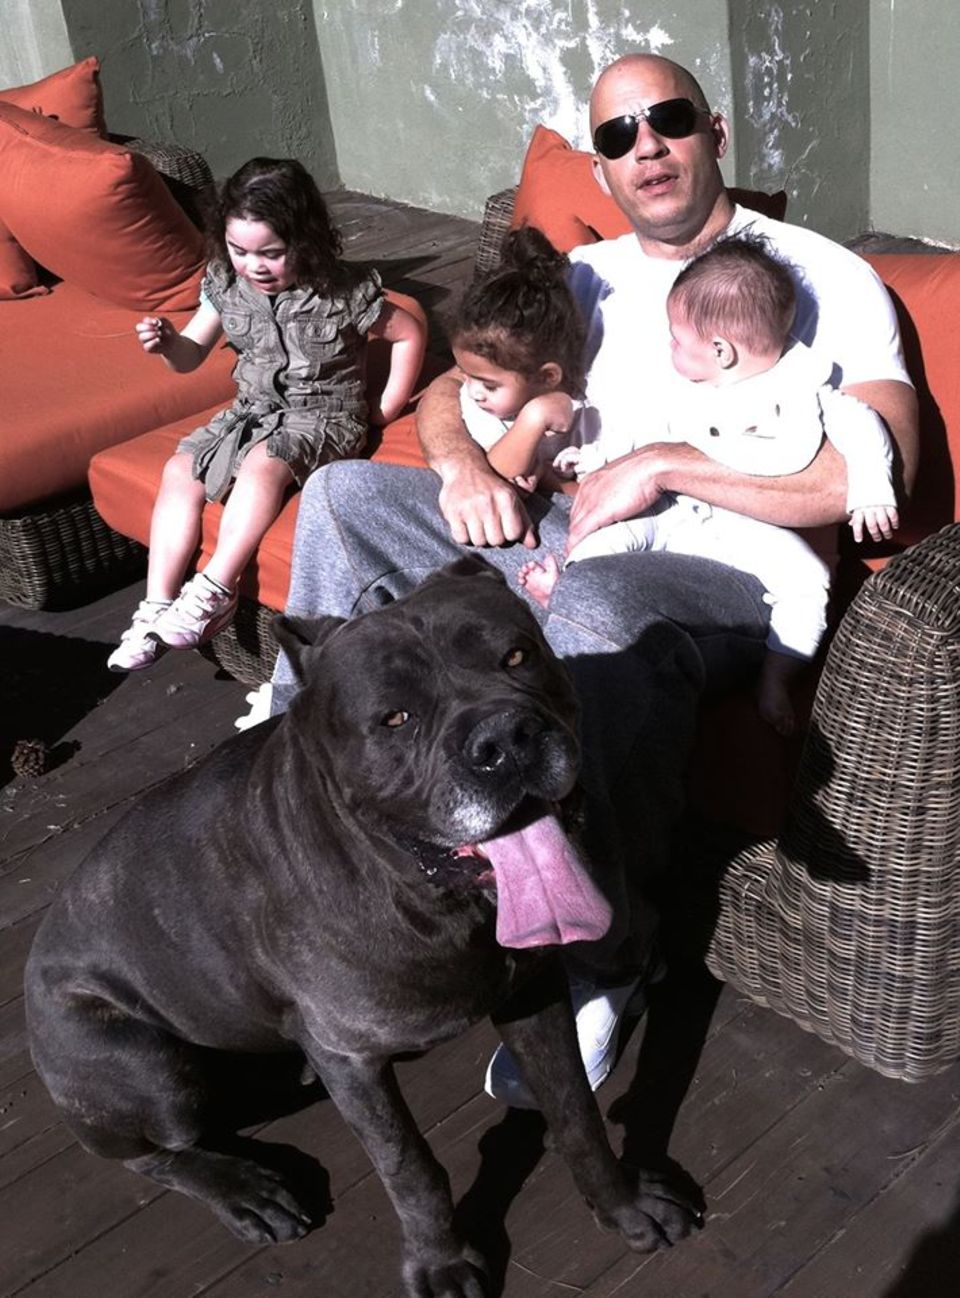 Challenge accepted! Vin Diesel überzeugt auch privat als Actionheld. Lässig mit Sonnenbrille bändigt er nicht nur seine drei Kinder, sondern auch gleich den Familienhund.